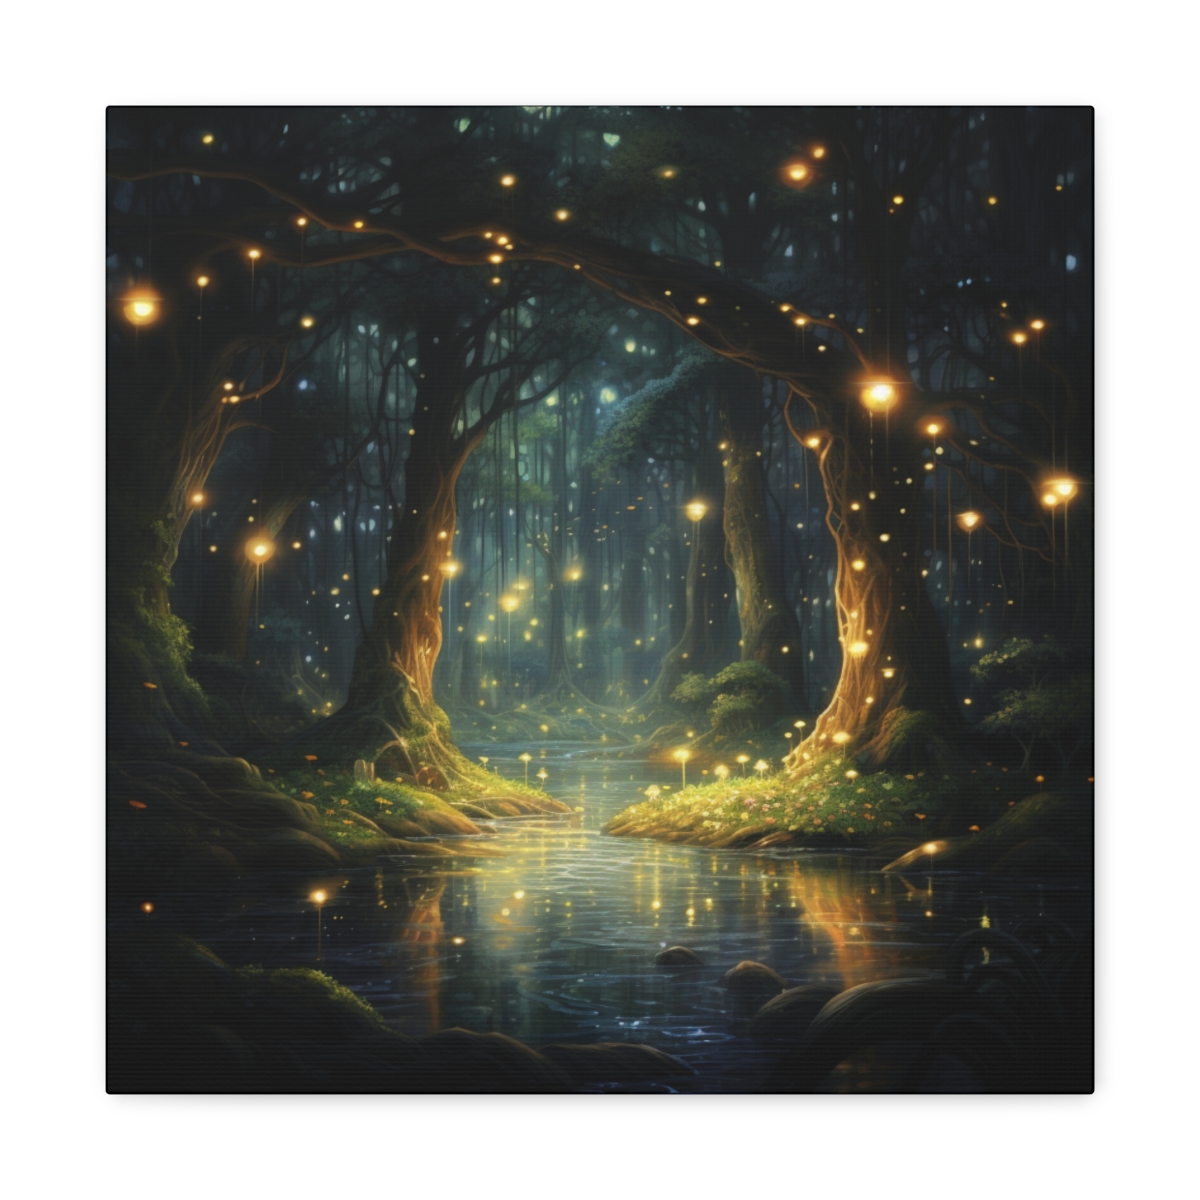 Fantasy Forest Art Canvas Print: Enchanting Sanctum